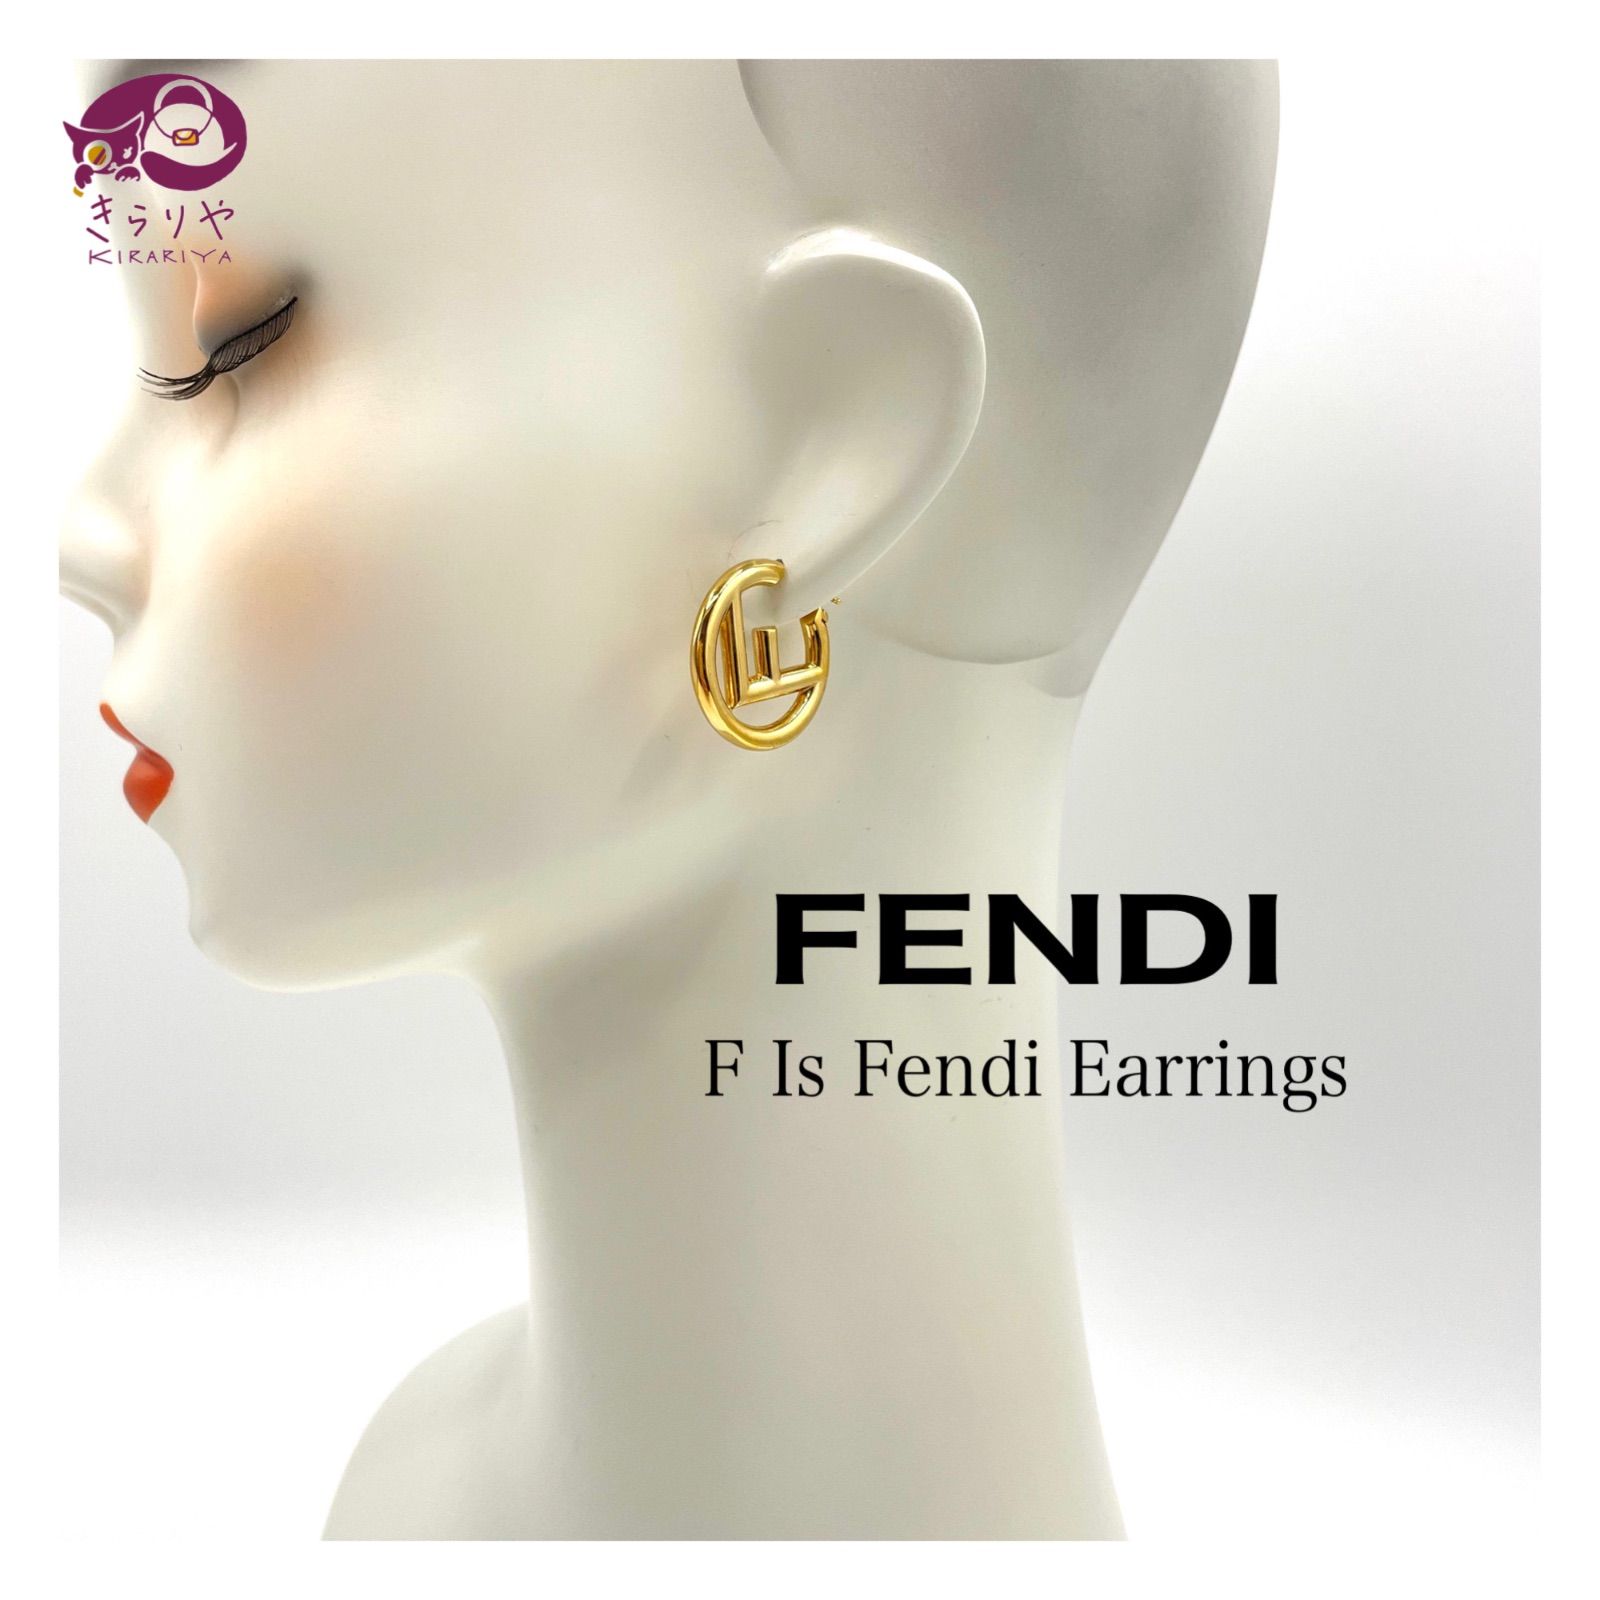 FENDI フェンディ F Is Fendi Earrings エフ イズ フェンディ フープ